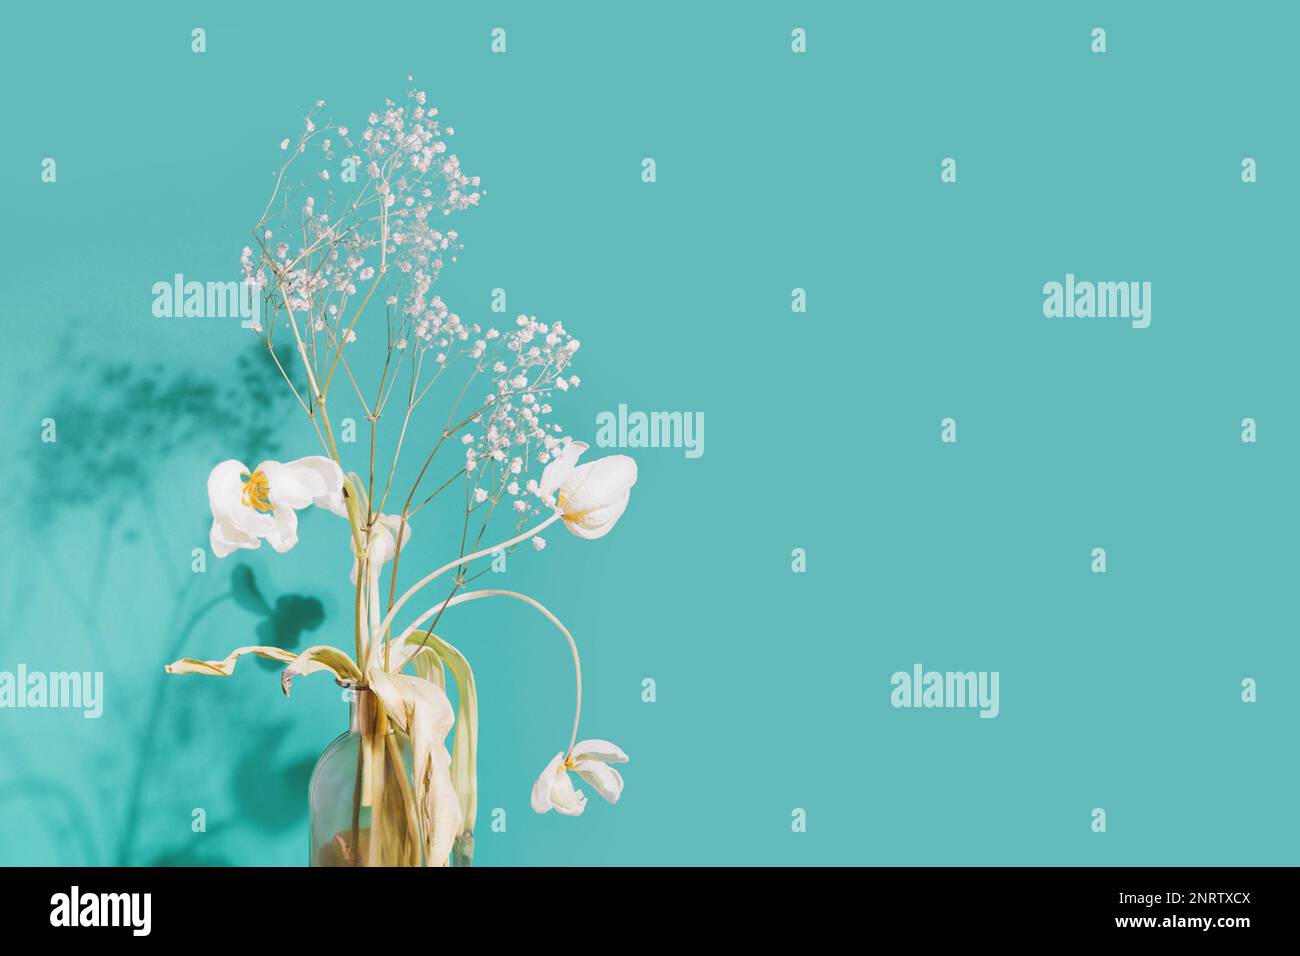 Blumiges Stilleben mit verwelkten Blumen in einer Vase auf blauem Hintergrund mit Schatten- und Kopierbereich. Vergangene Liebe, Altern, Transienz oder Depression. B Stockfoto